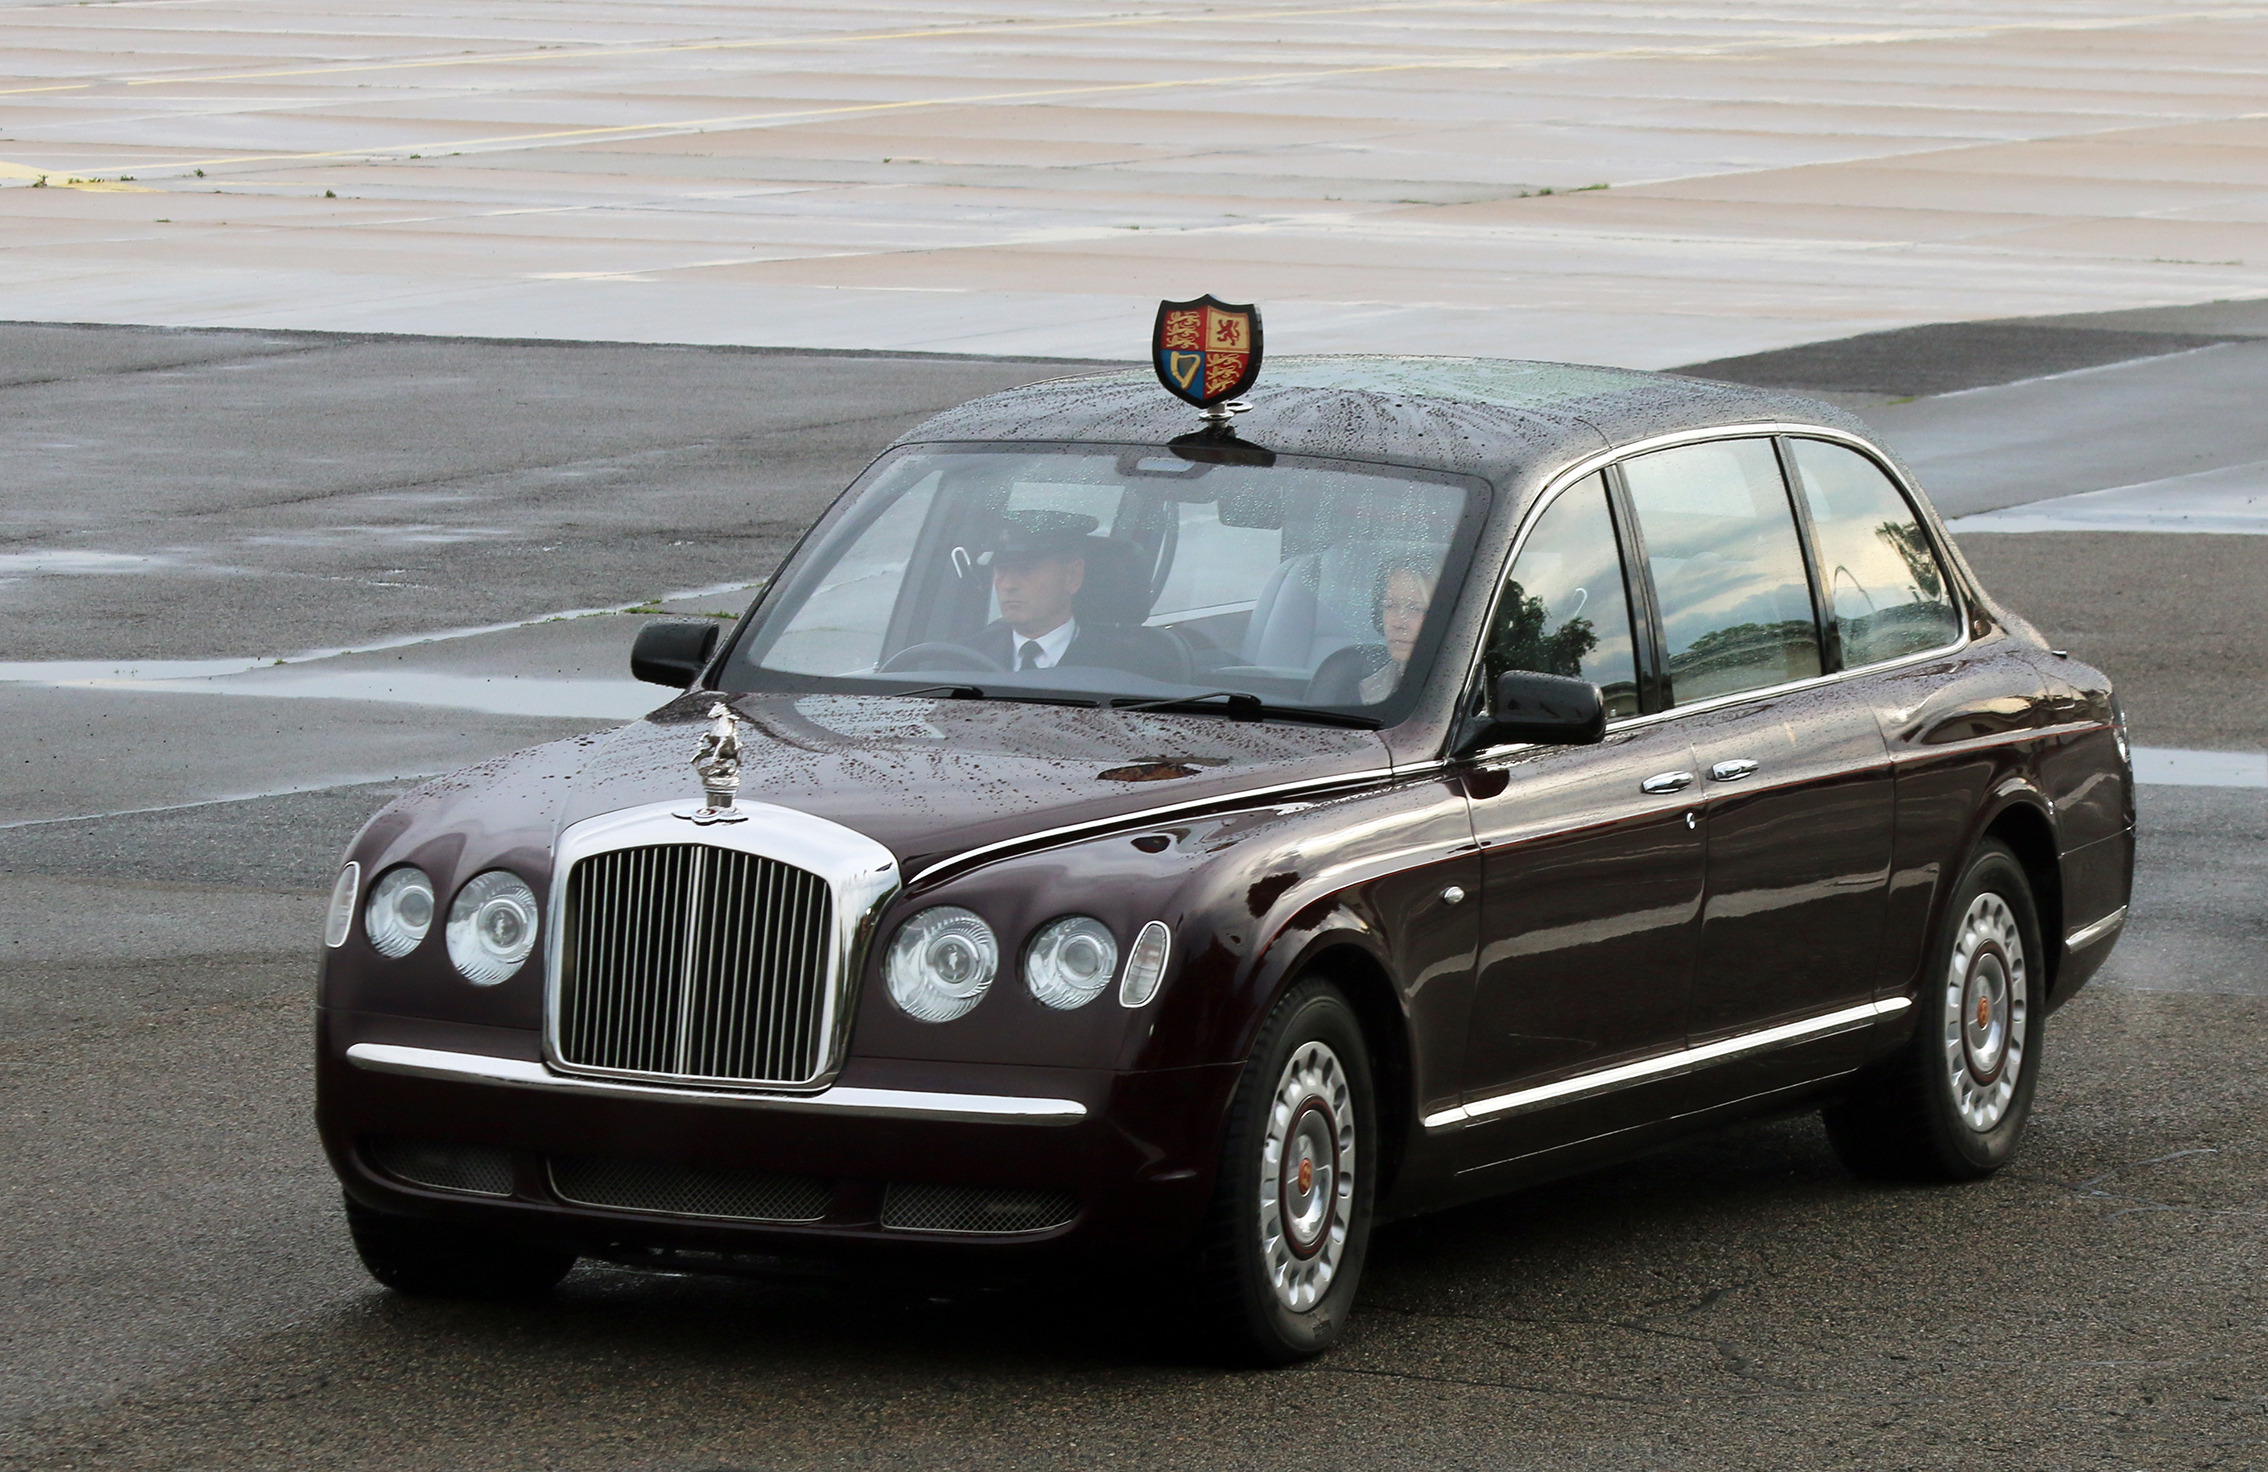 Die weinrote, gepanzerte "Bentley State" Limousine der Queen rollt an
